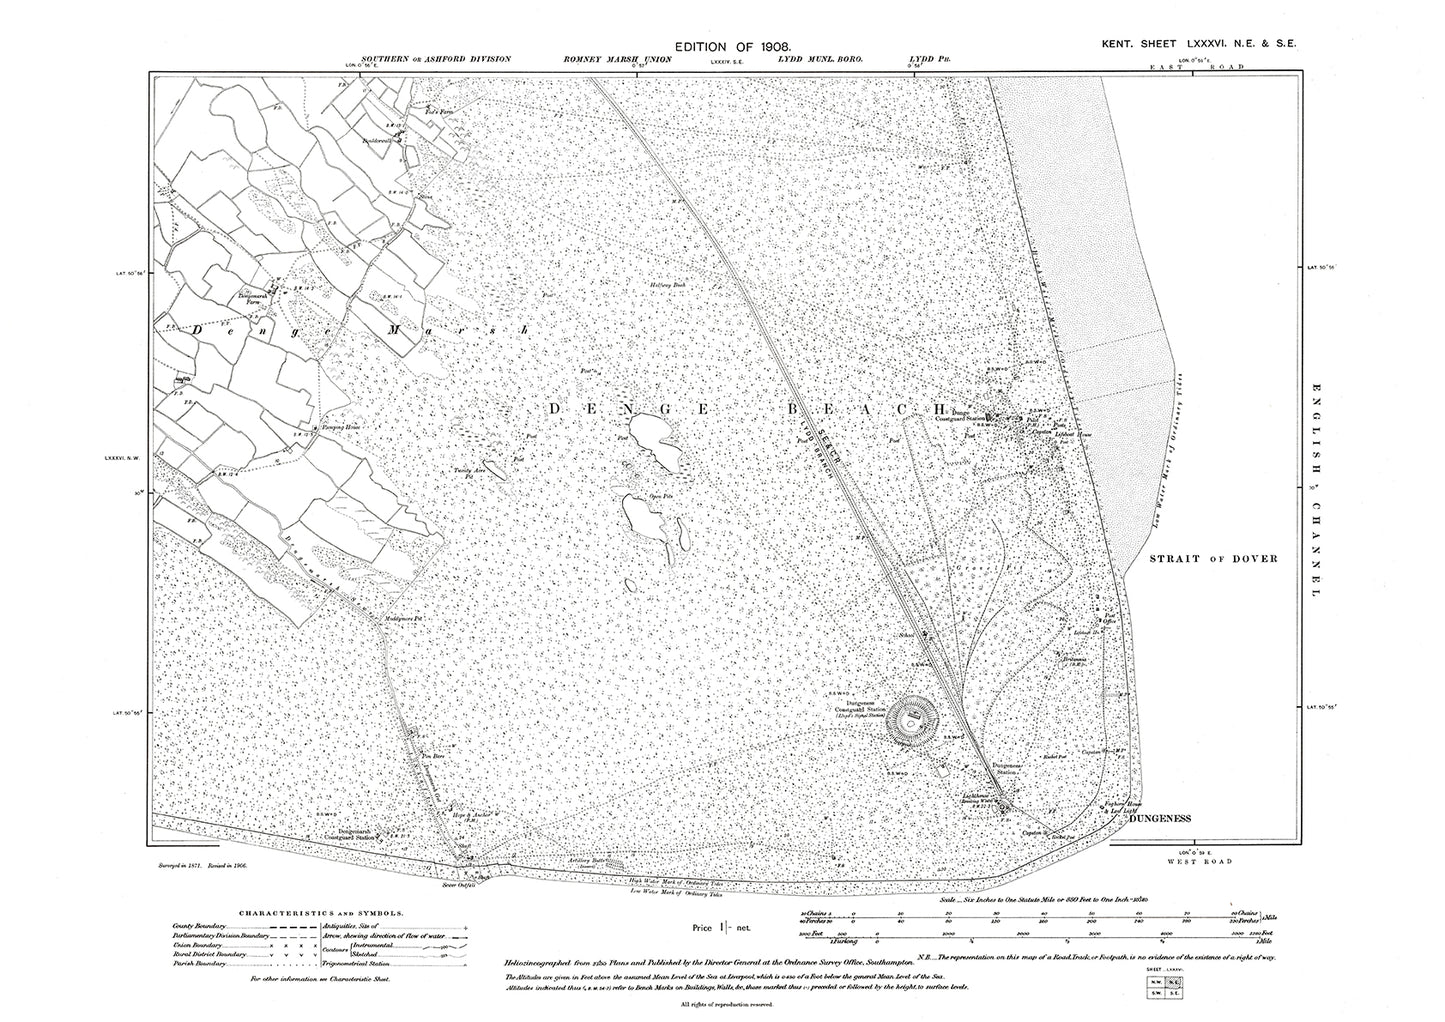 Dungeness, old map Kent 1908: 86NE-SE